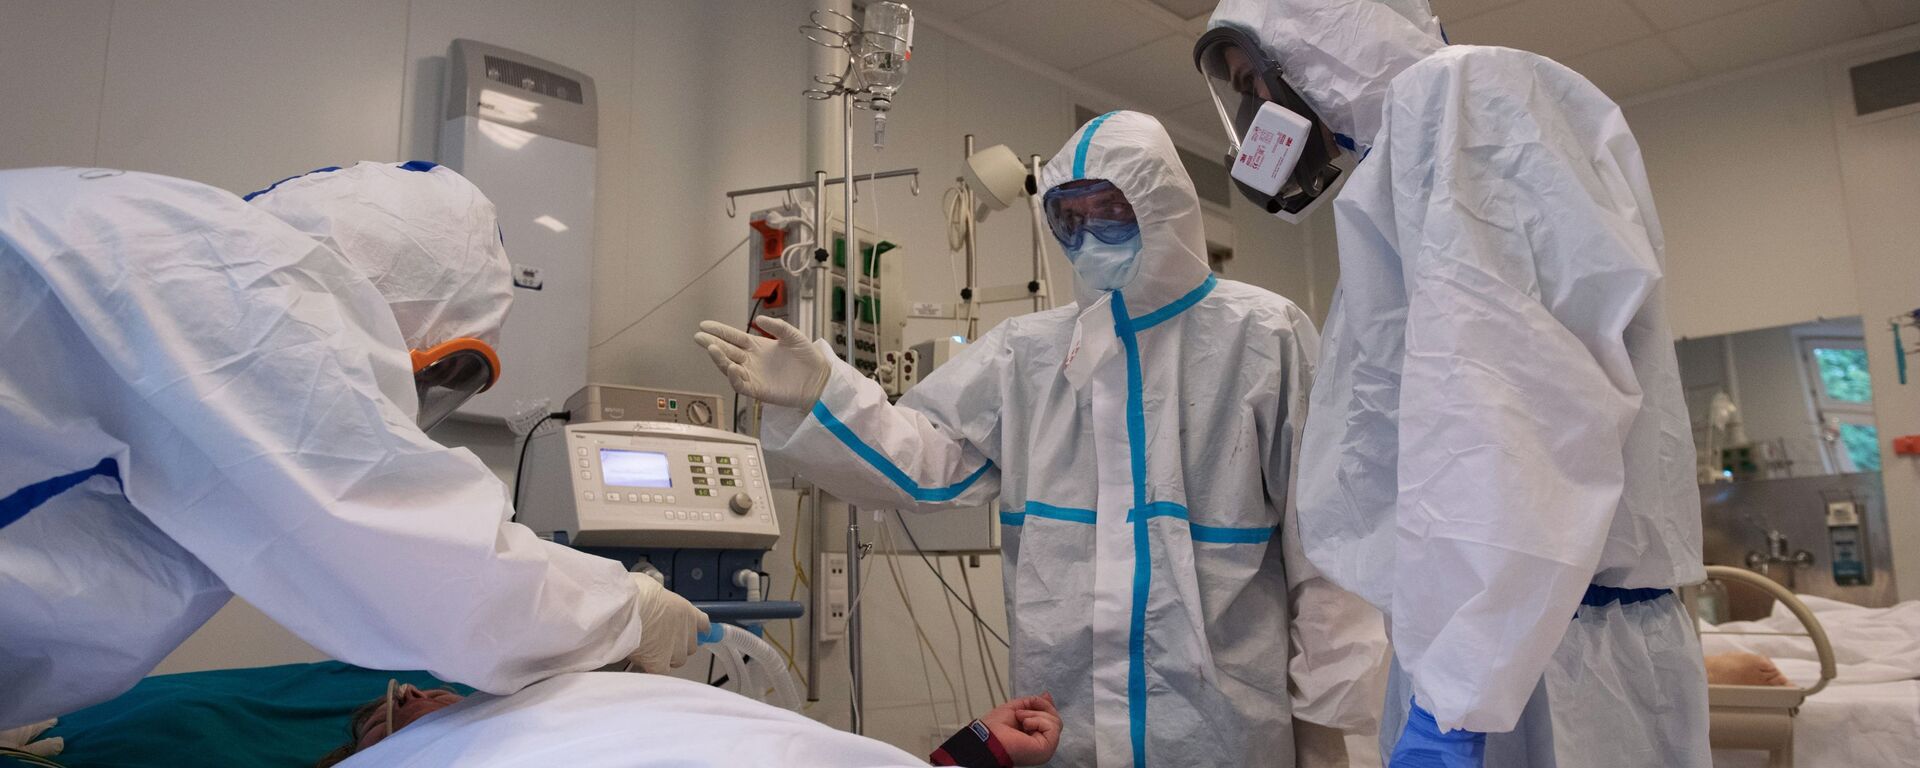 فحص و معالجة مرضى كوفيد-19 (كورونا) في مستشفى بيروغوفا في موسكو، روسيا  18 مايو 2020 - سبوتنيك عربي, 1920, 25.12.2020